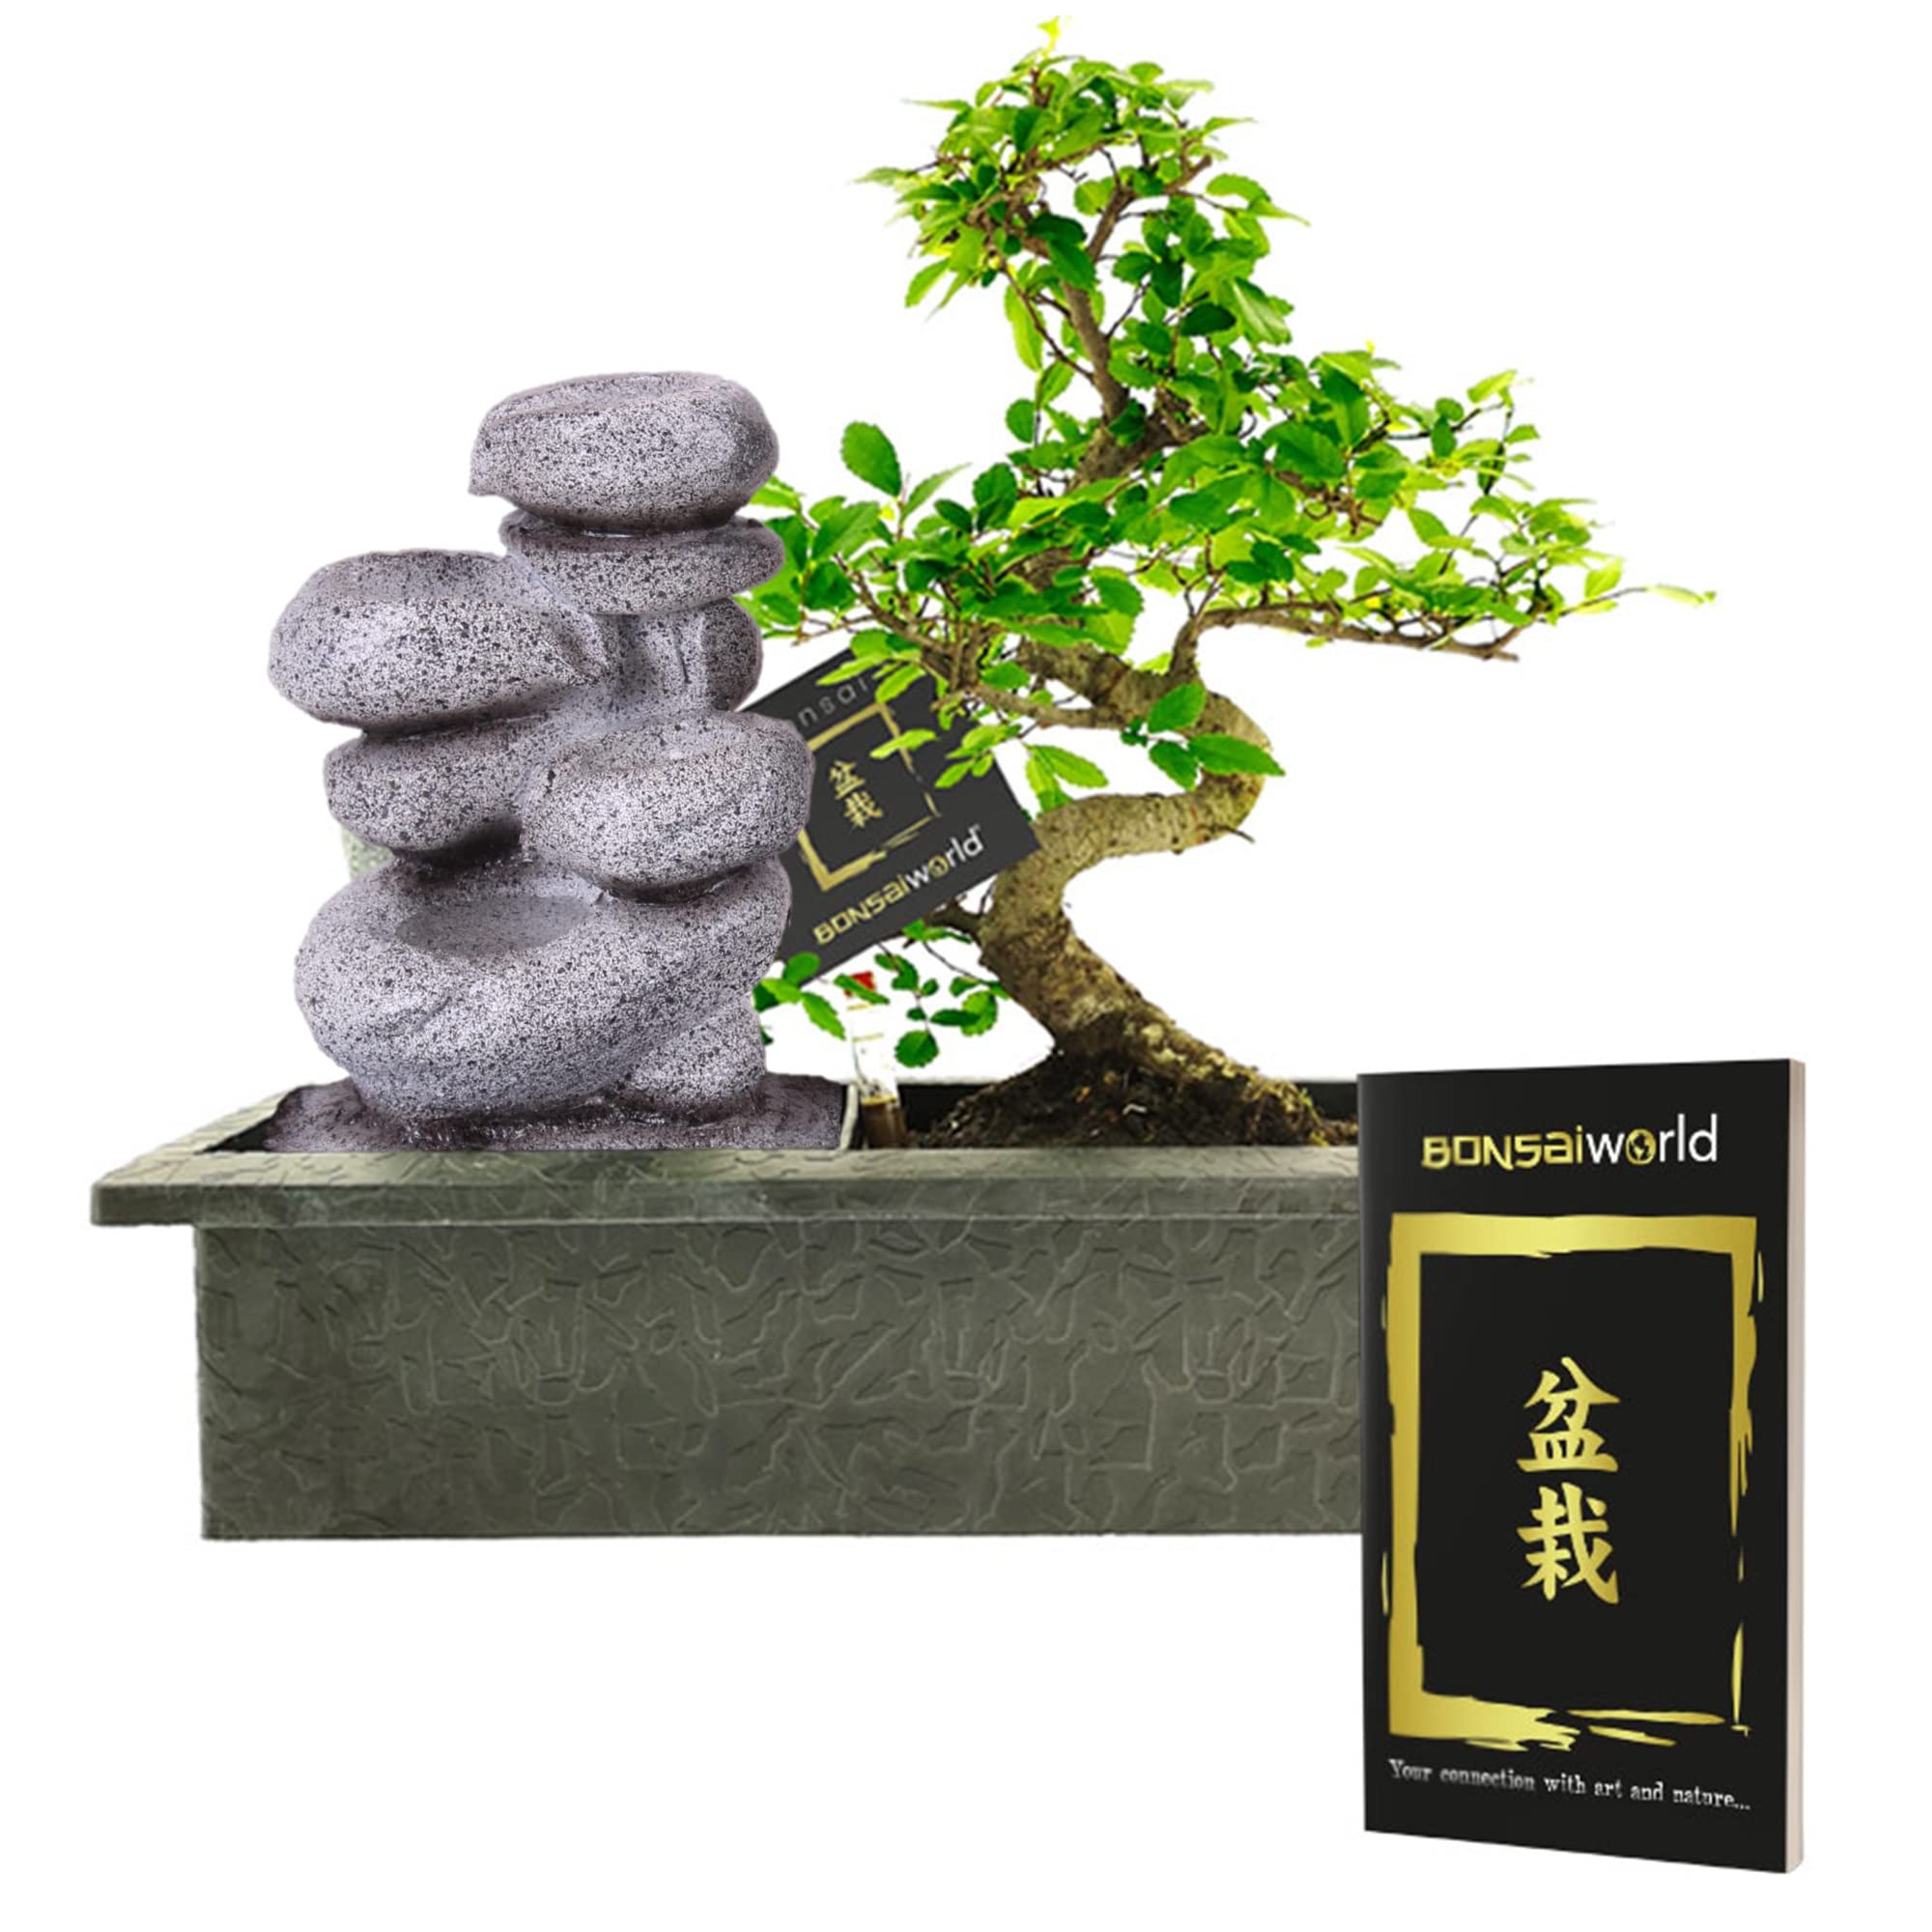 vdvelde.com - Bonsaiworld Zen Wasserfall - Bonsai Set mit Fließendes Wasser und ein Bonsai-Buch - Bonsai Baum ca. 10 Jahre alt, Höhe: ca. 30 cm - Zimmerbonsai Pflegeleicht